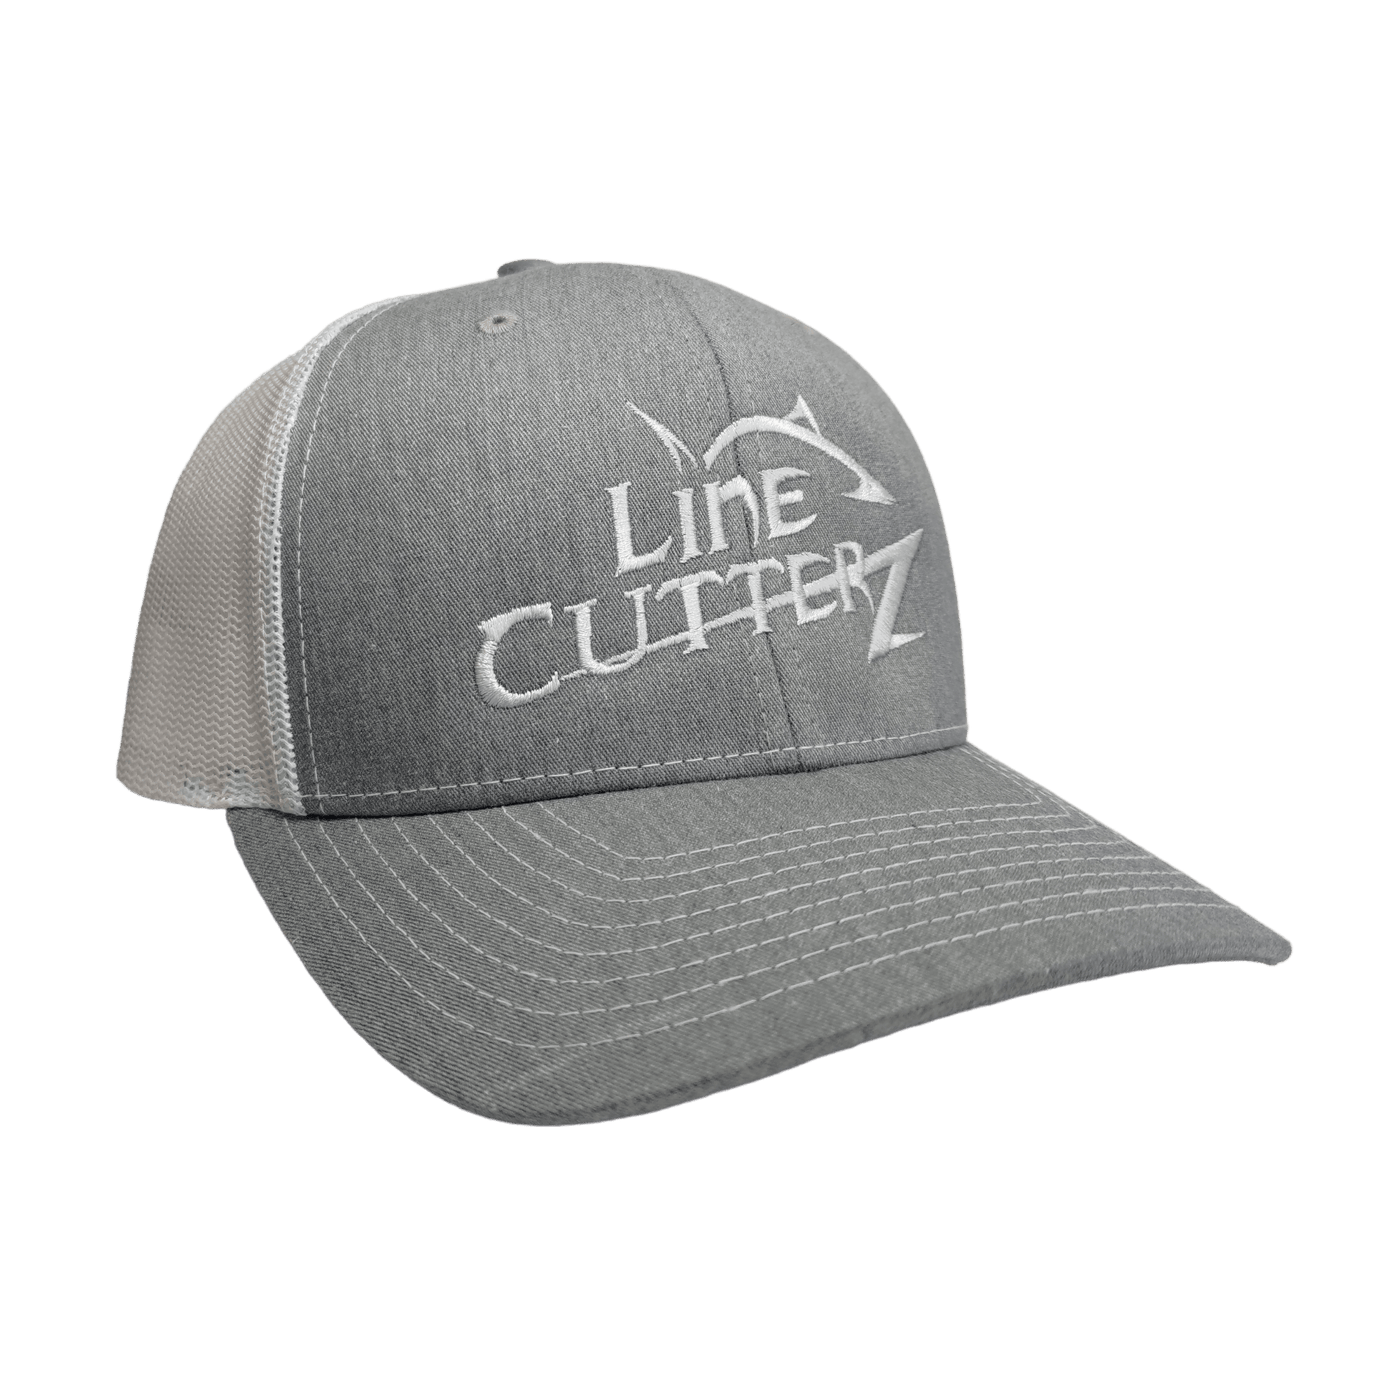 Line Cutterz Meshback Trucker Snapback Hats Line Cutterz Heather Grey/White - White Logo 